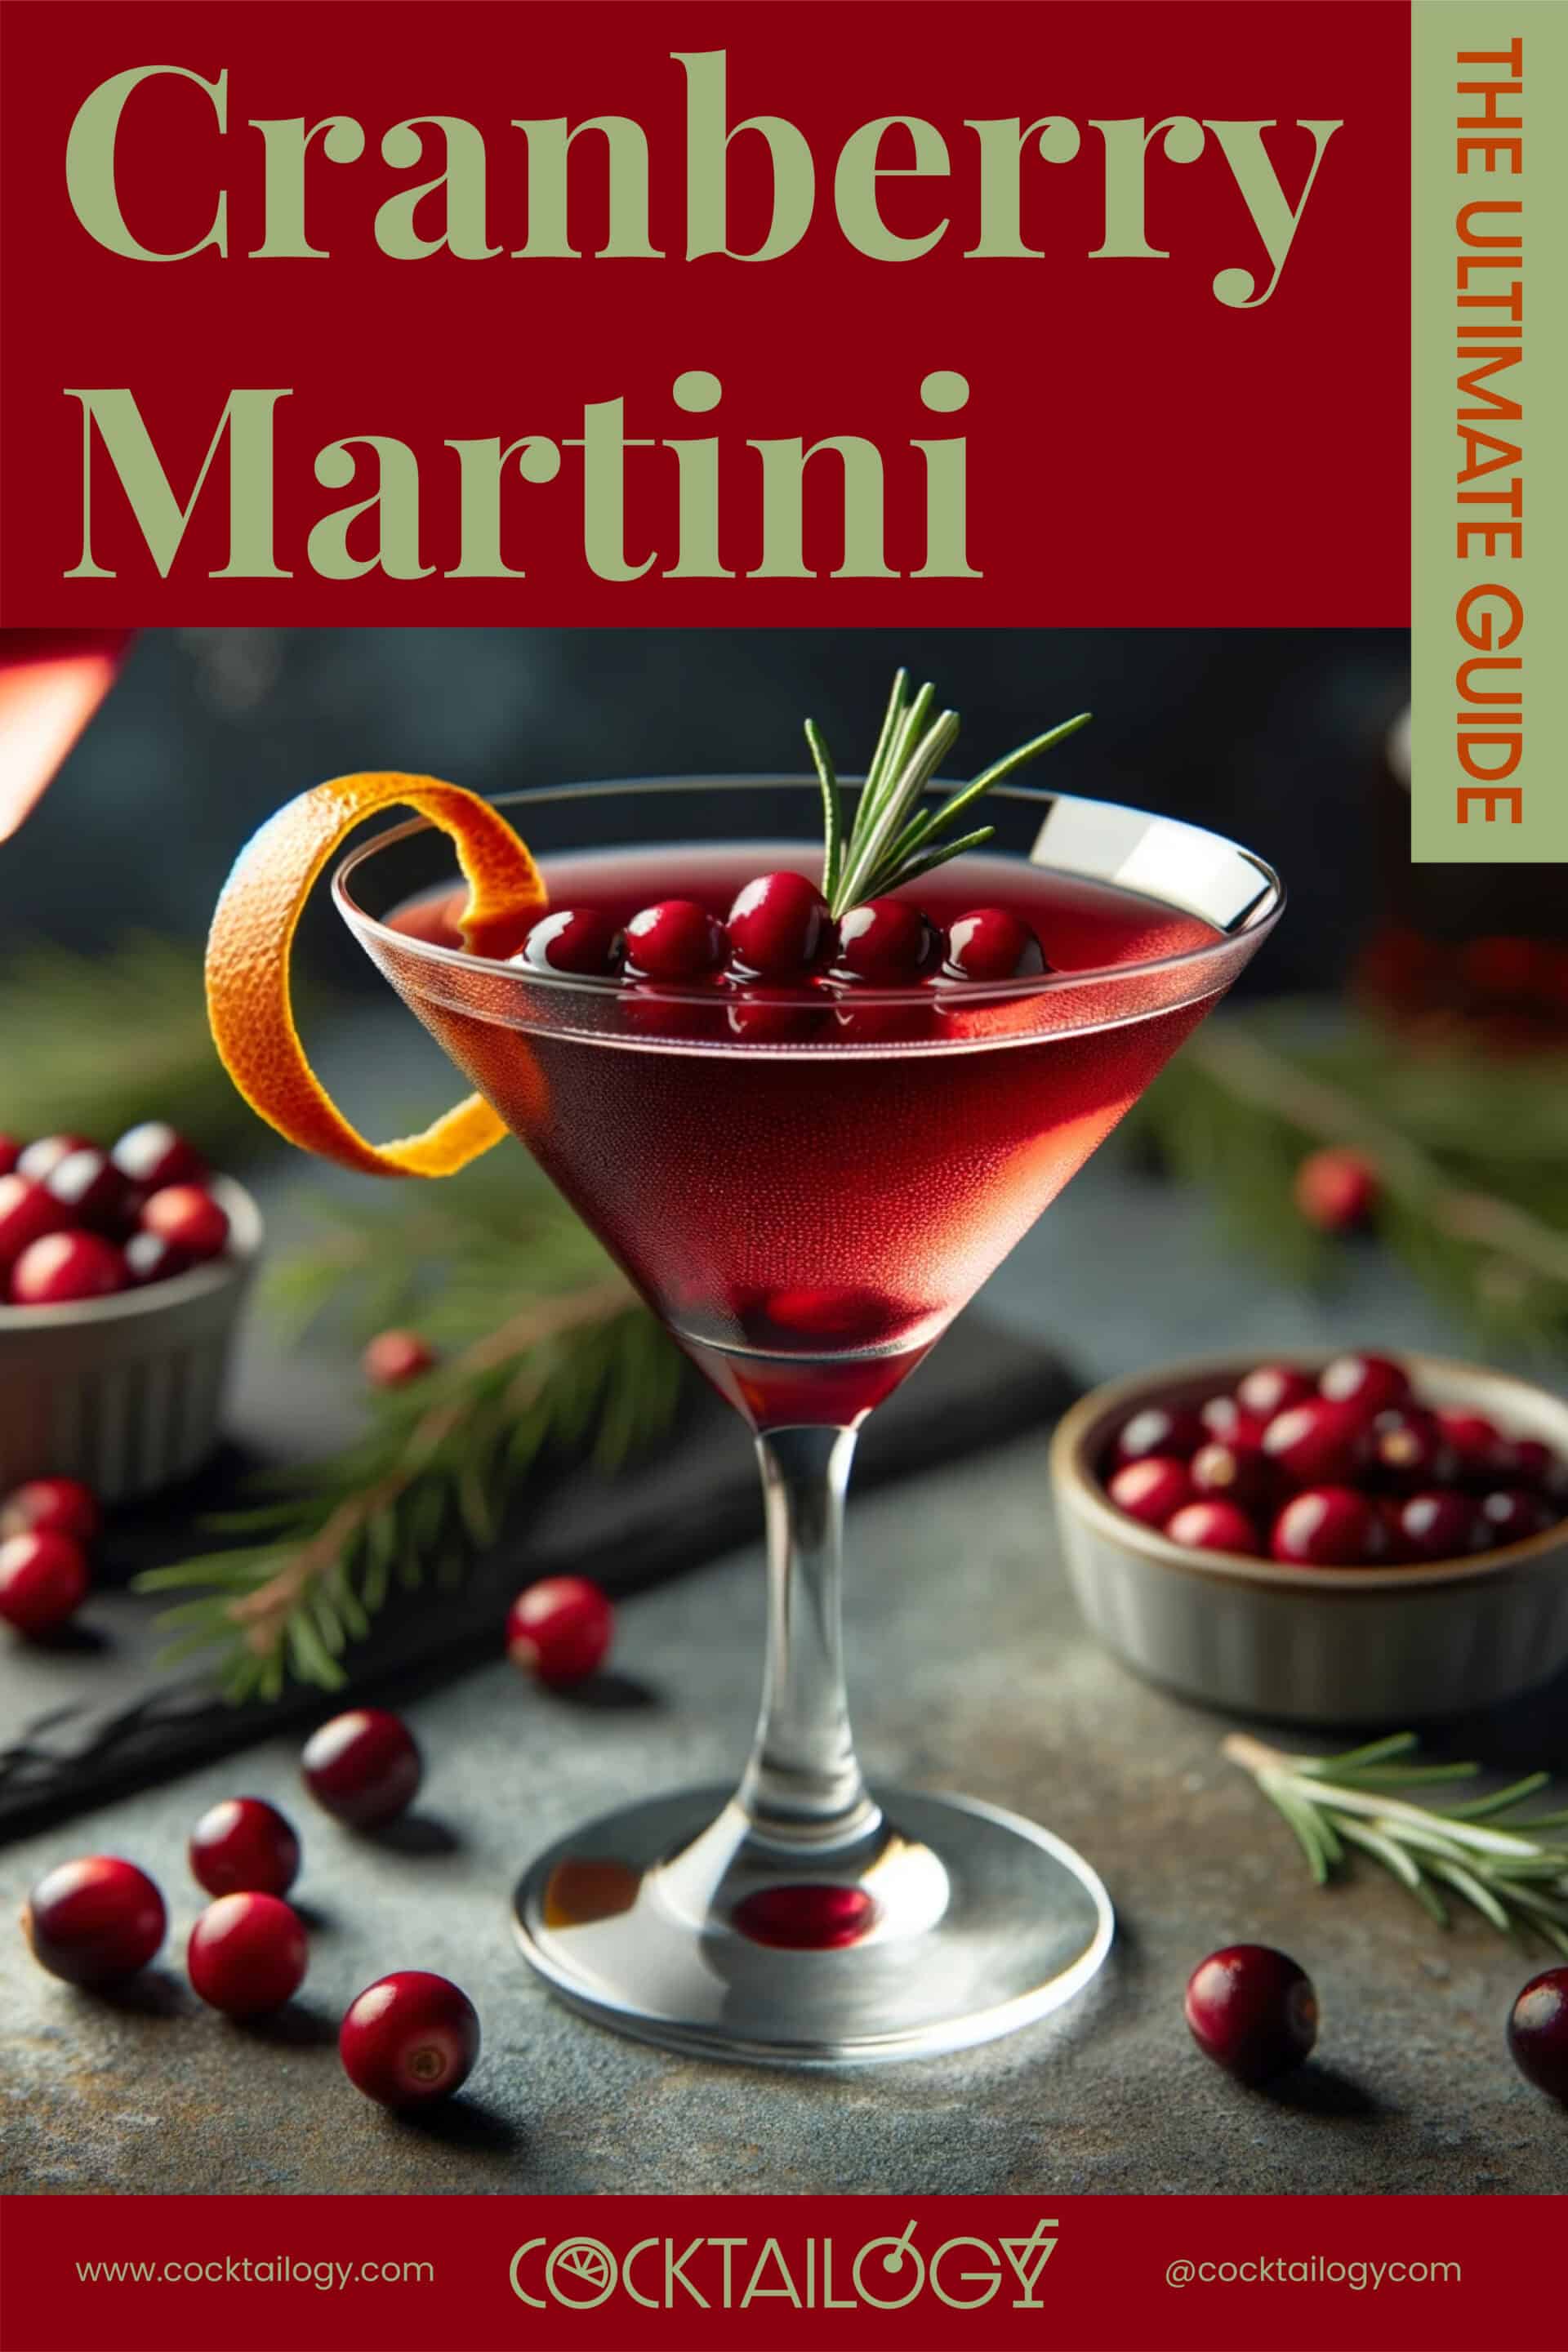 Cranberry Martini Guide